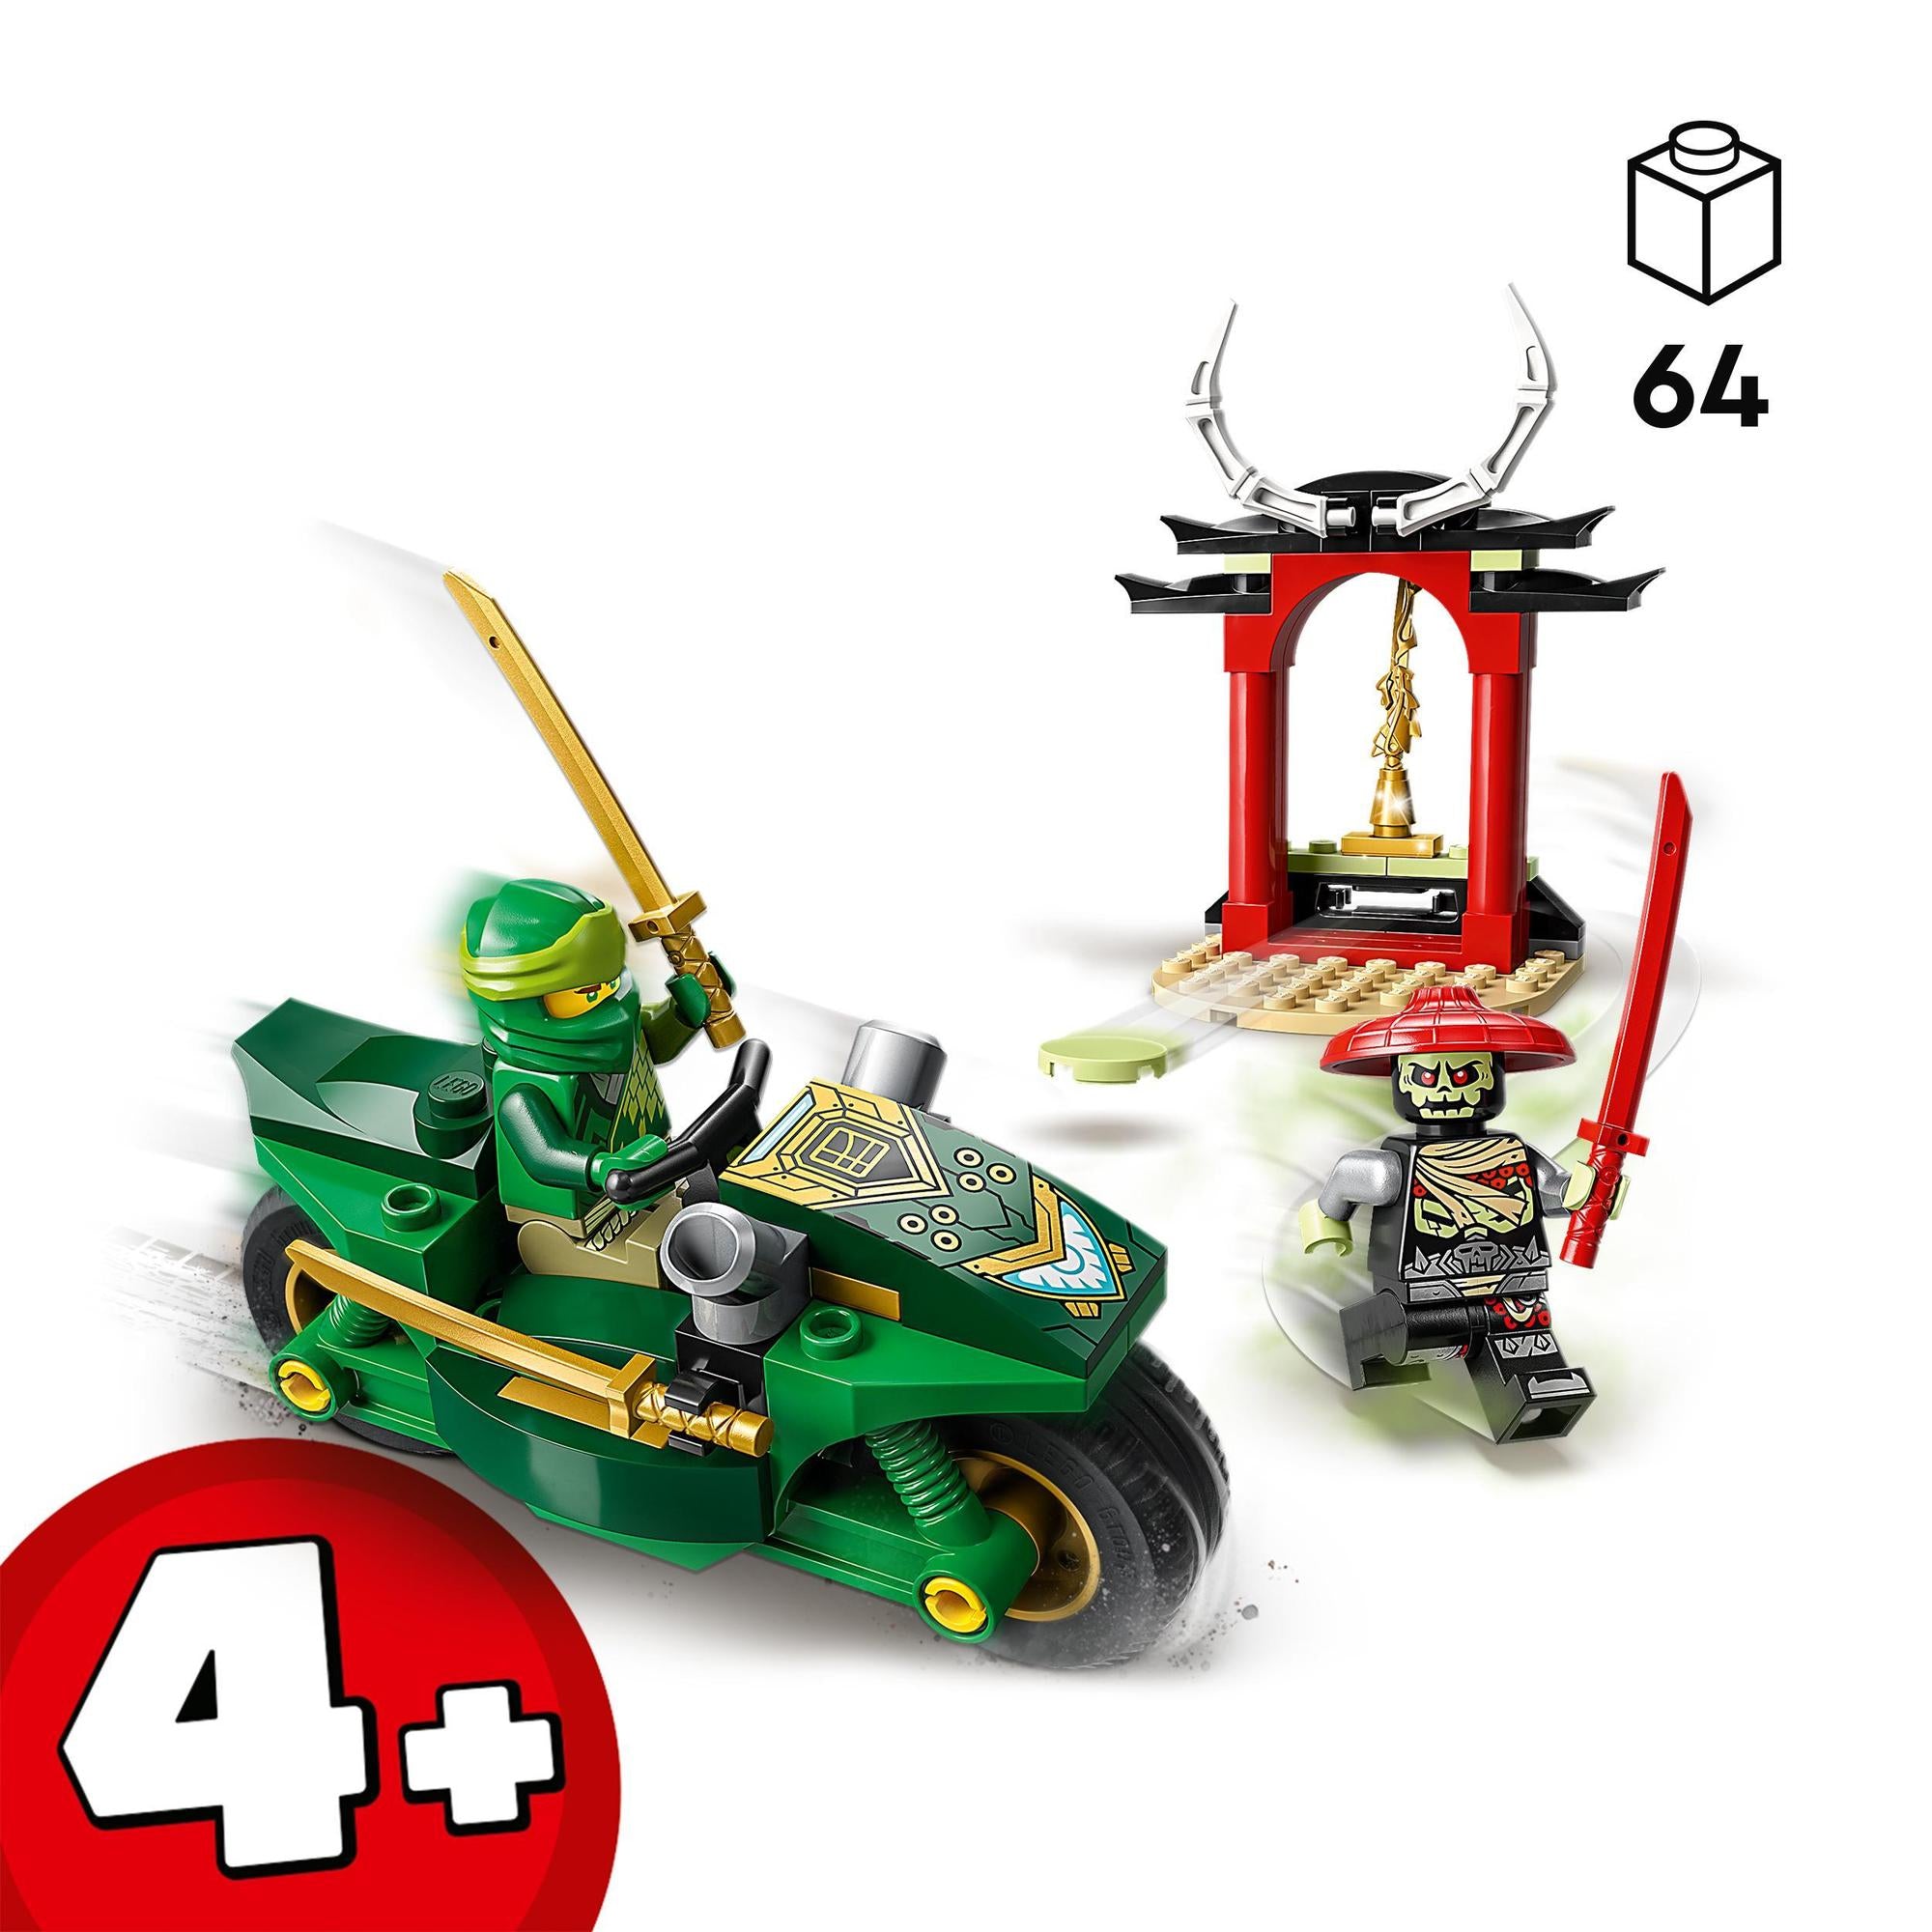 LEGO® | 71788 | Lloyds Ninja-Motorrad